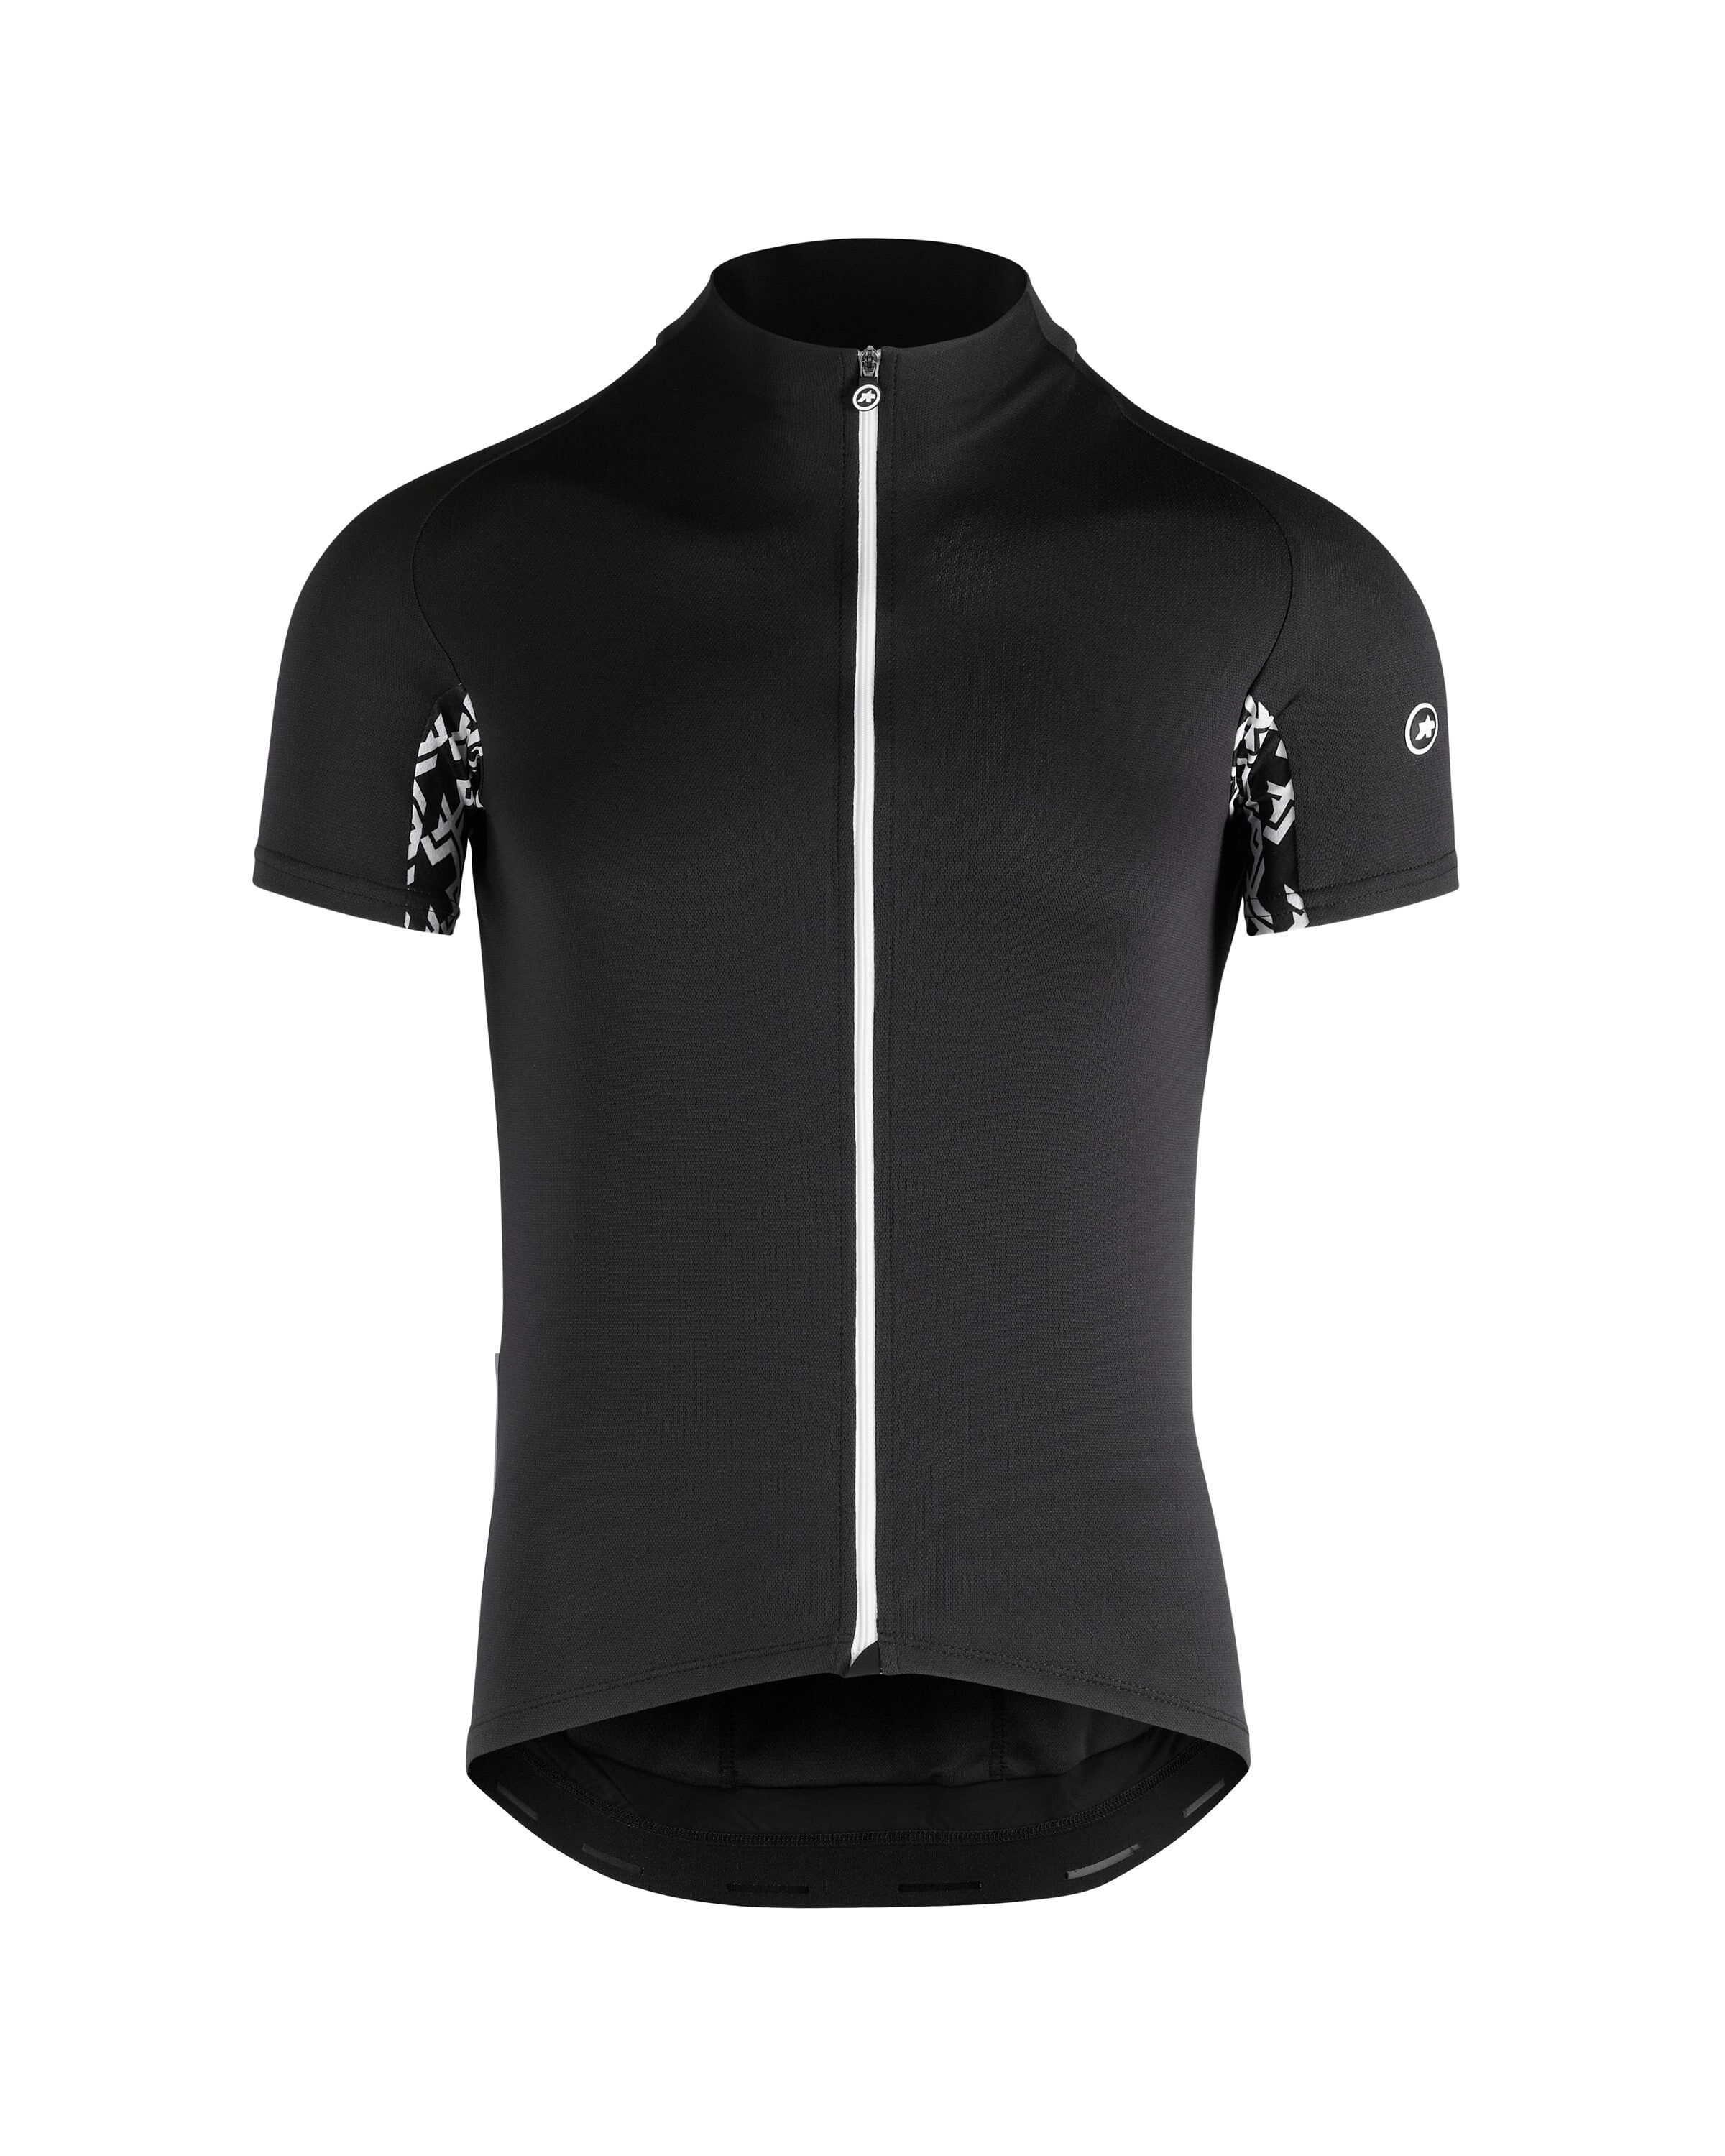 Assos Mille GT Short Sleeve Jersey - Cycling jersey - Men's